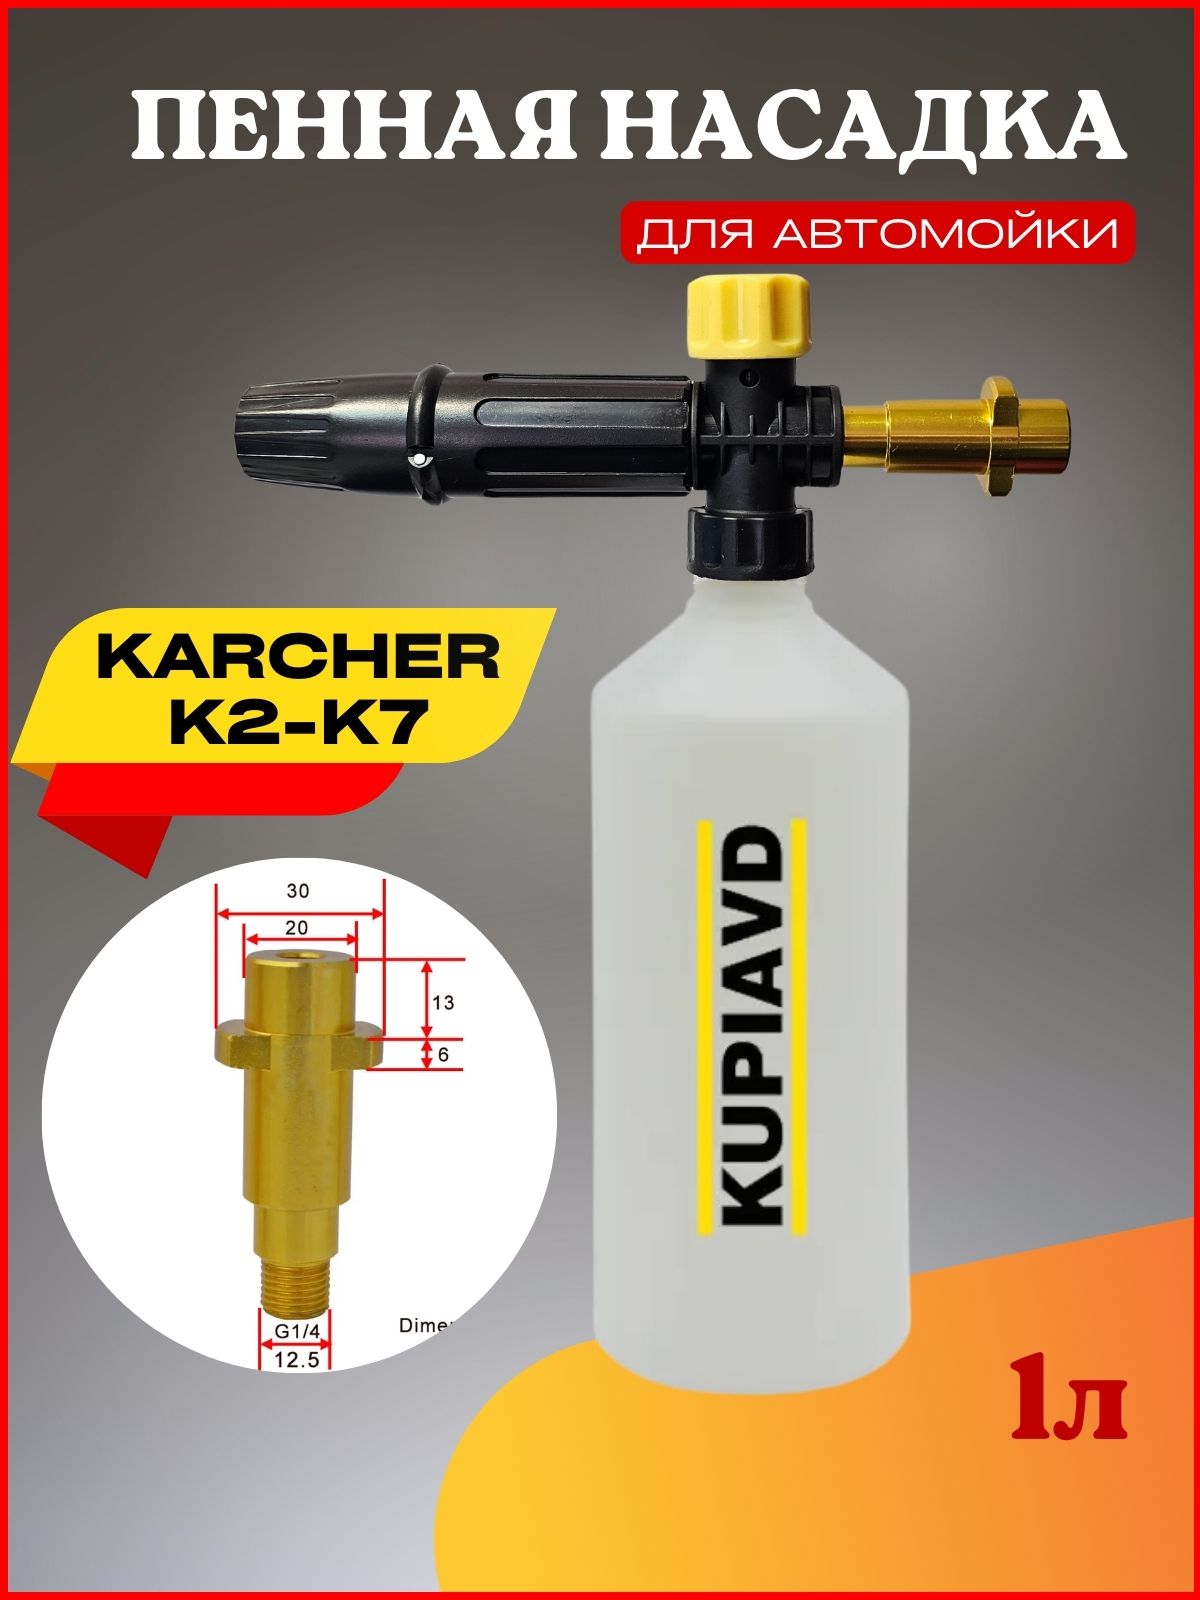 ПеннаянасадкаLS3дляминимоекKarcher(Керхер)K2-K7